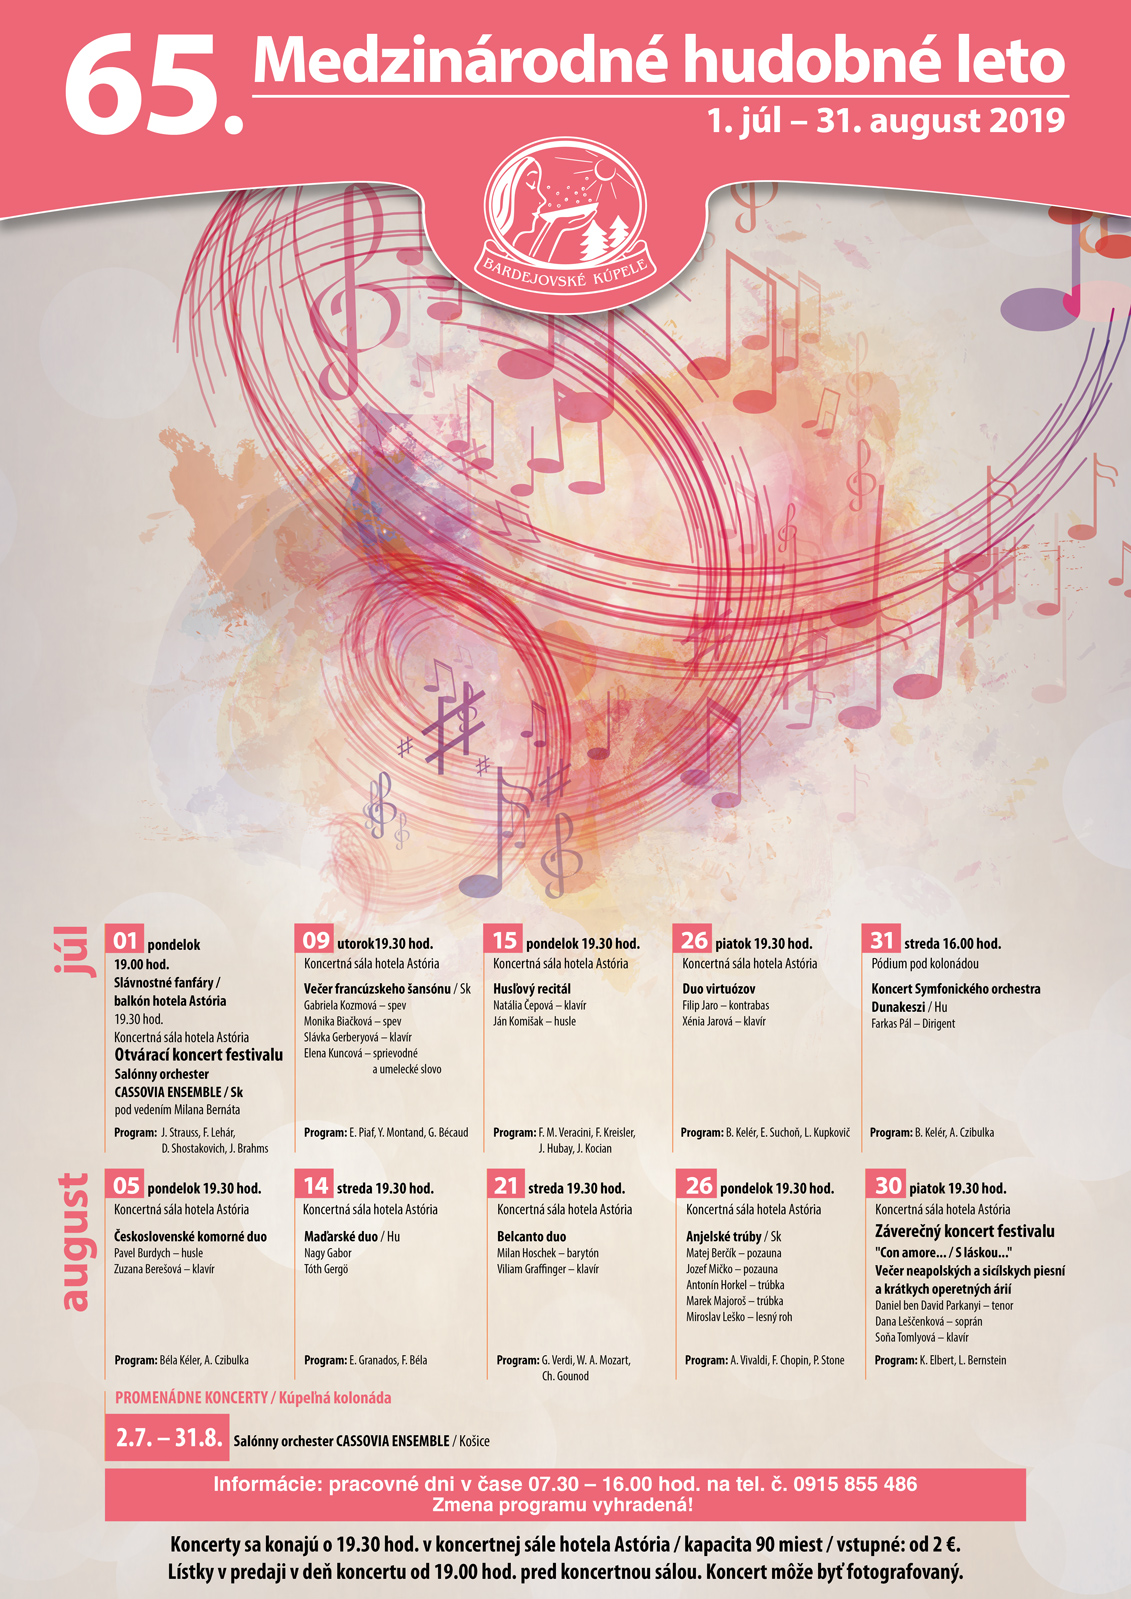 65. Medzinrodn hudobn leto 2019 Bardejov